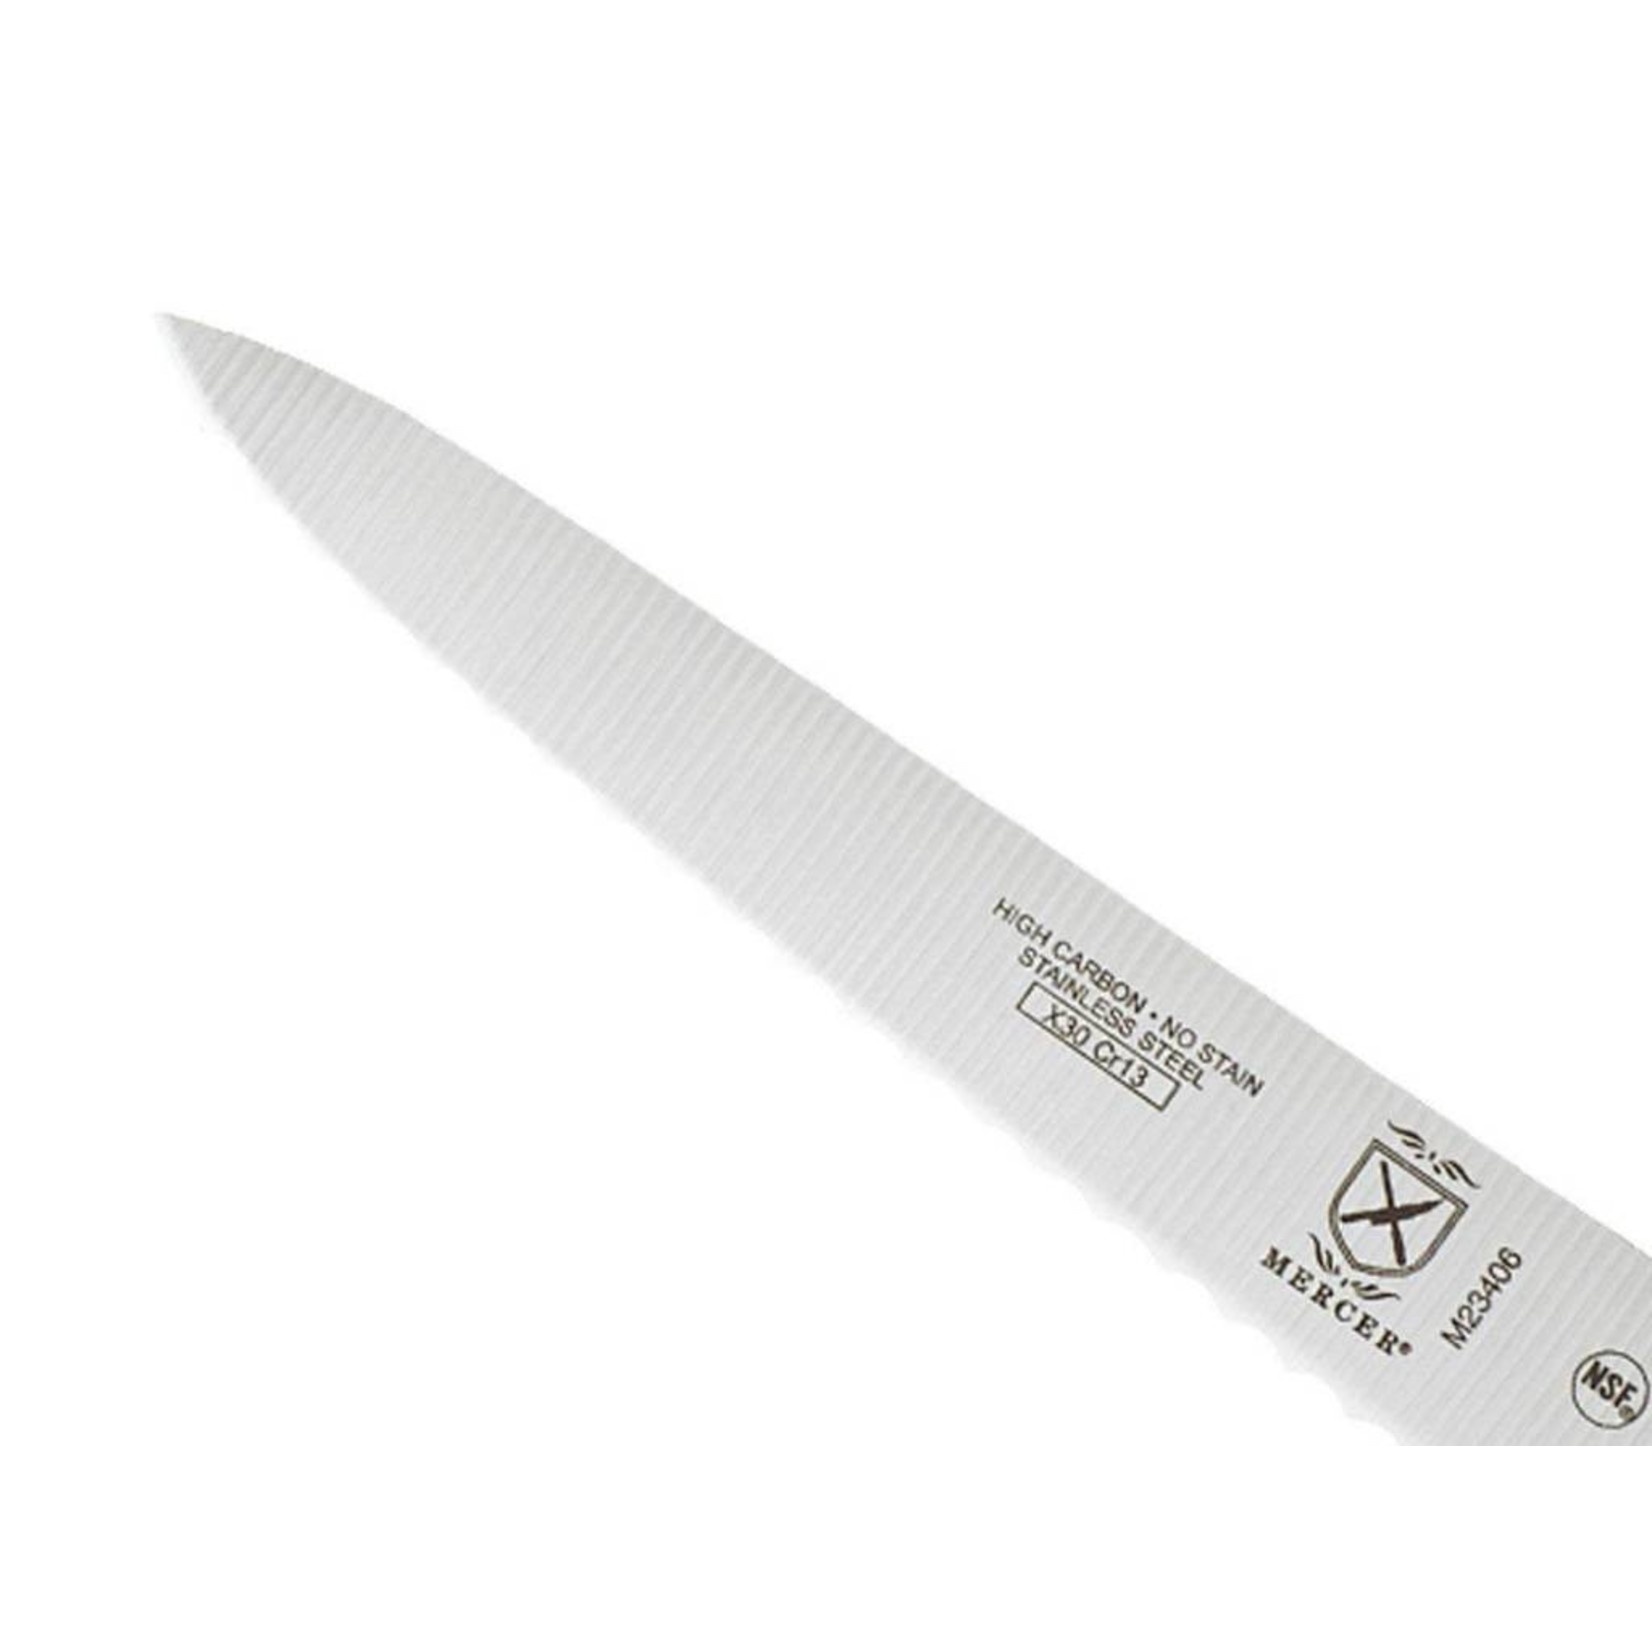 Millennia® Wavy Edge Utility Knife 6 (15.2 cm) - Mercer Culinary